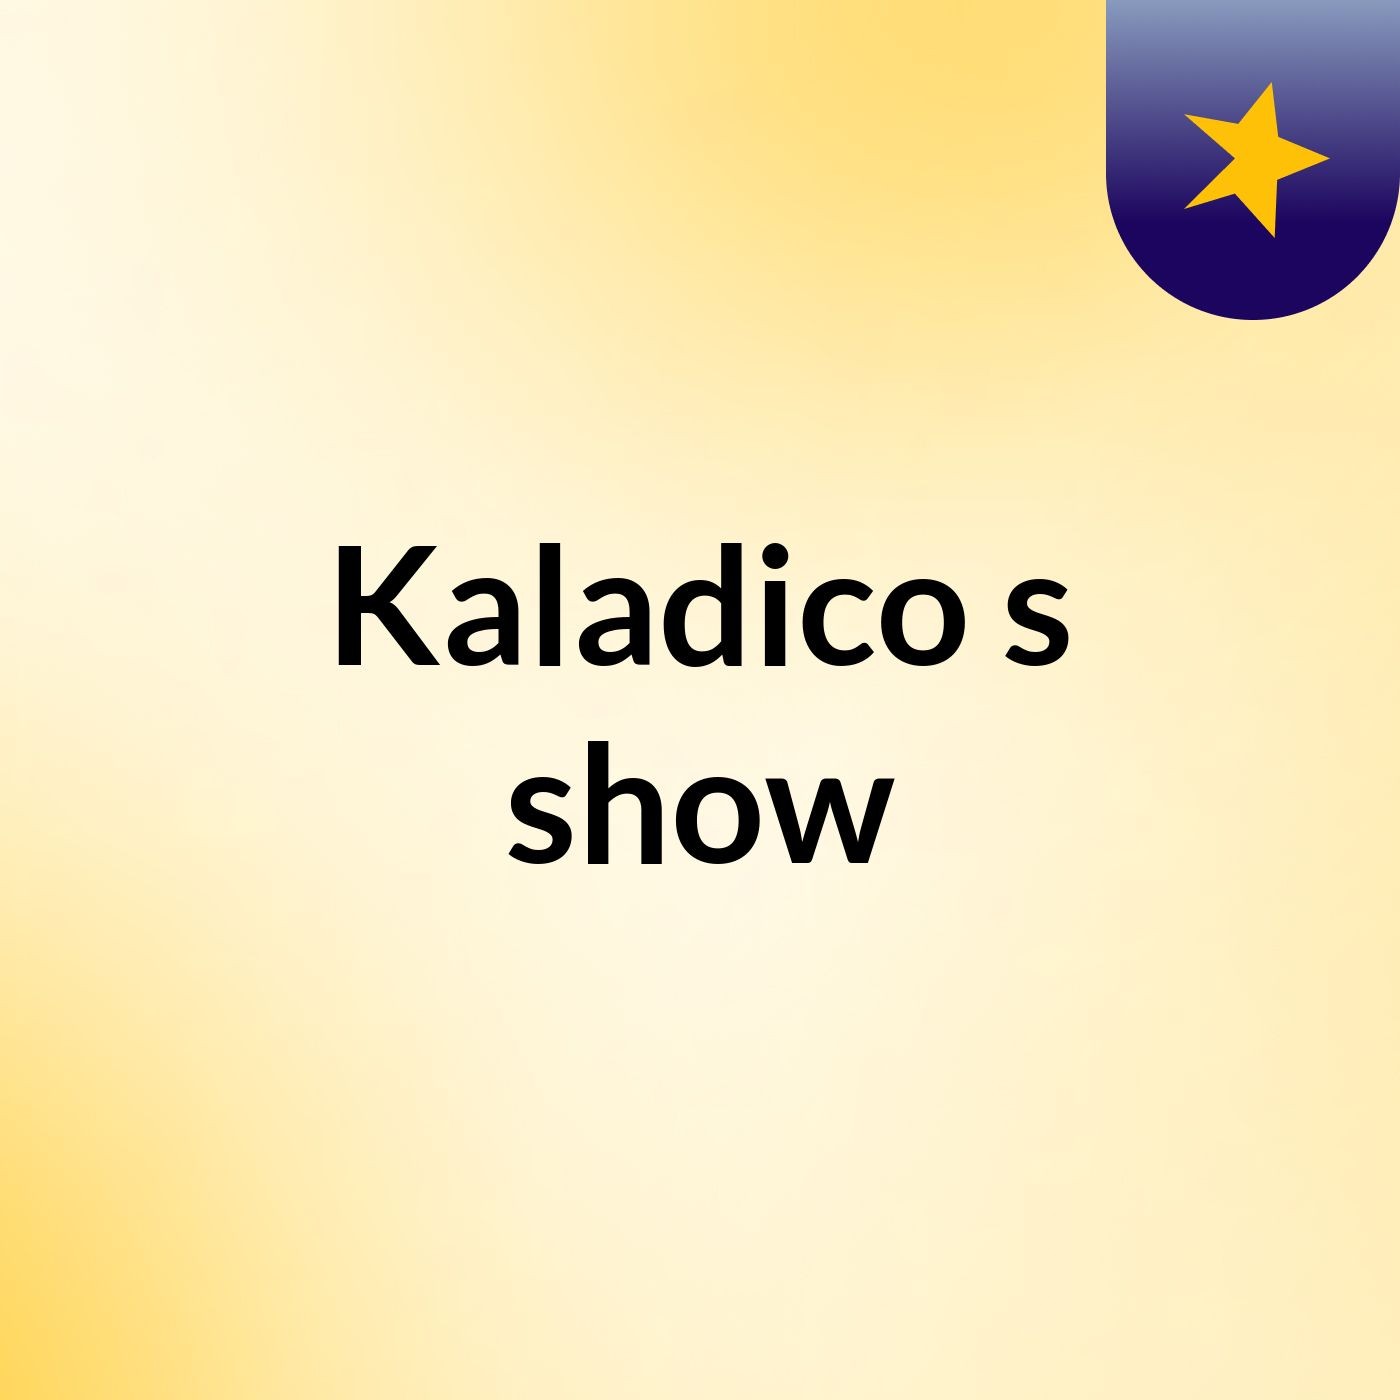 Kaladico's show